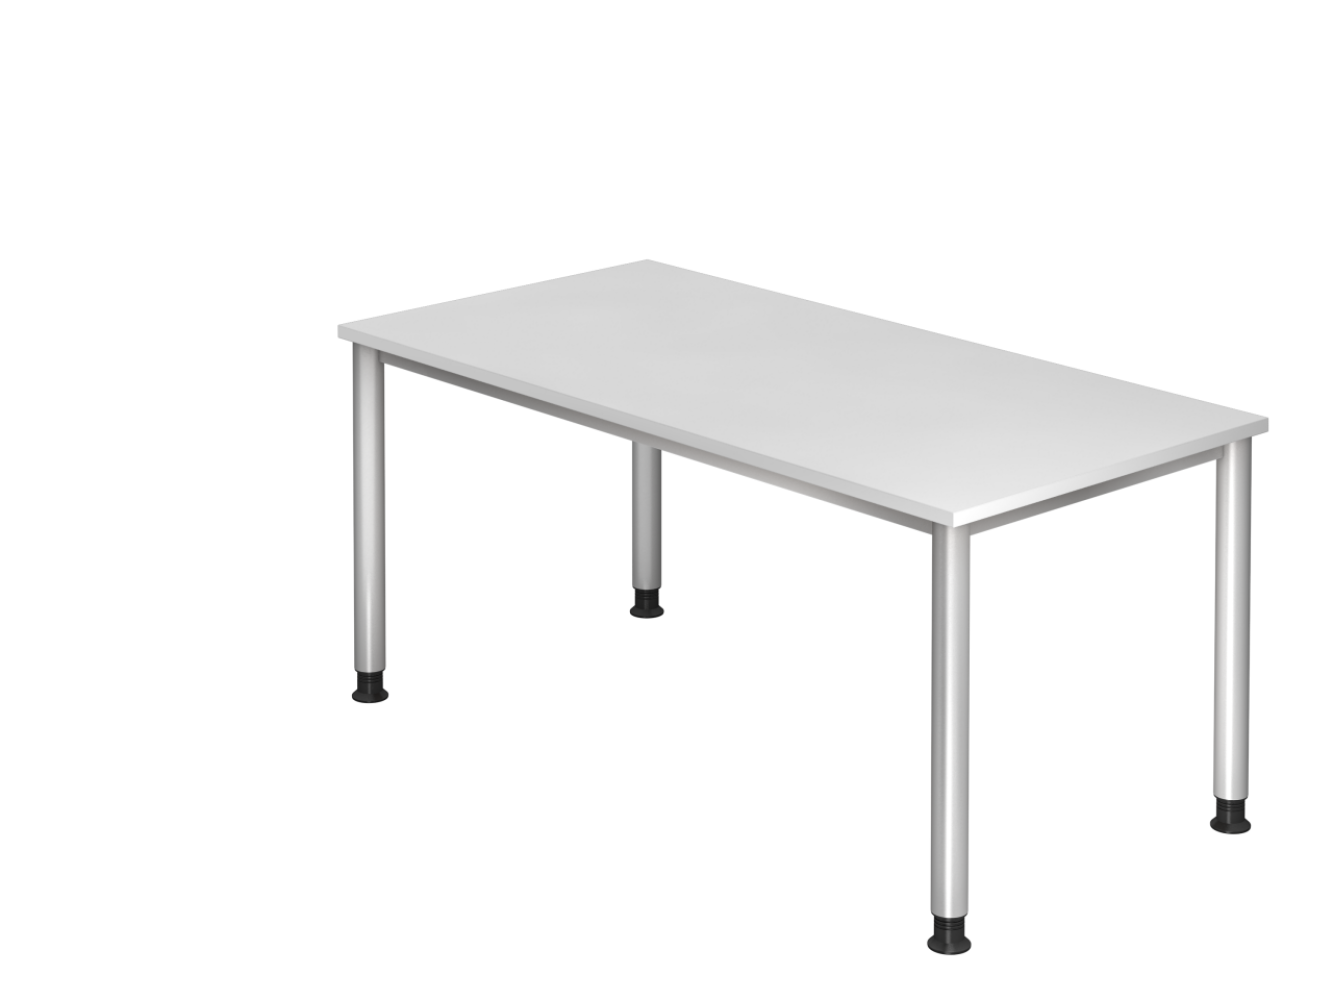 'HS16' Schreibtisch mit rundem 4-Fuß-Gestell, Weiß/ Silber, 160 x 80 x 68-76 cm Bild 1